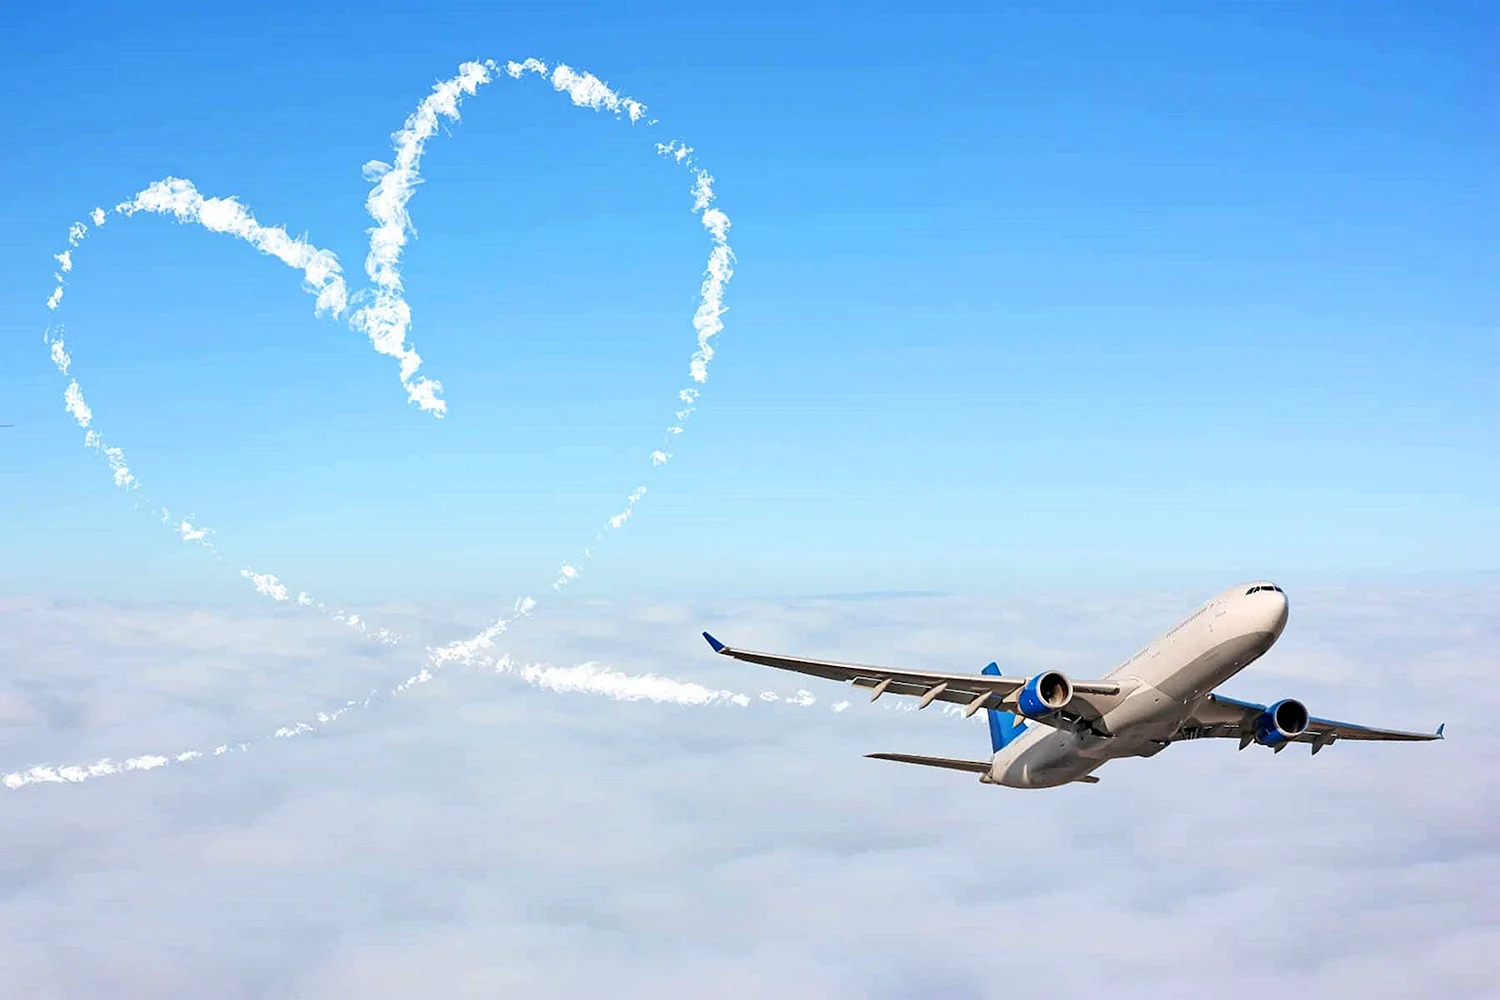 Сердце с самолетом